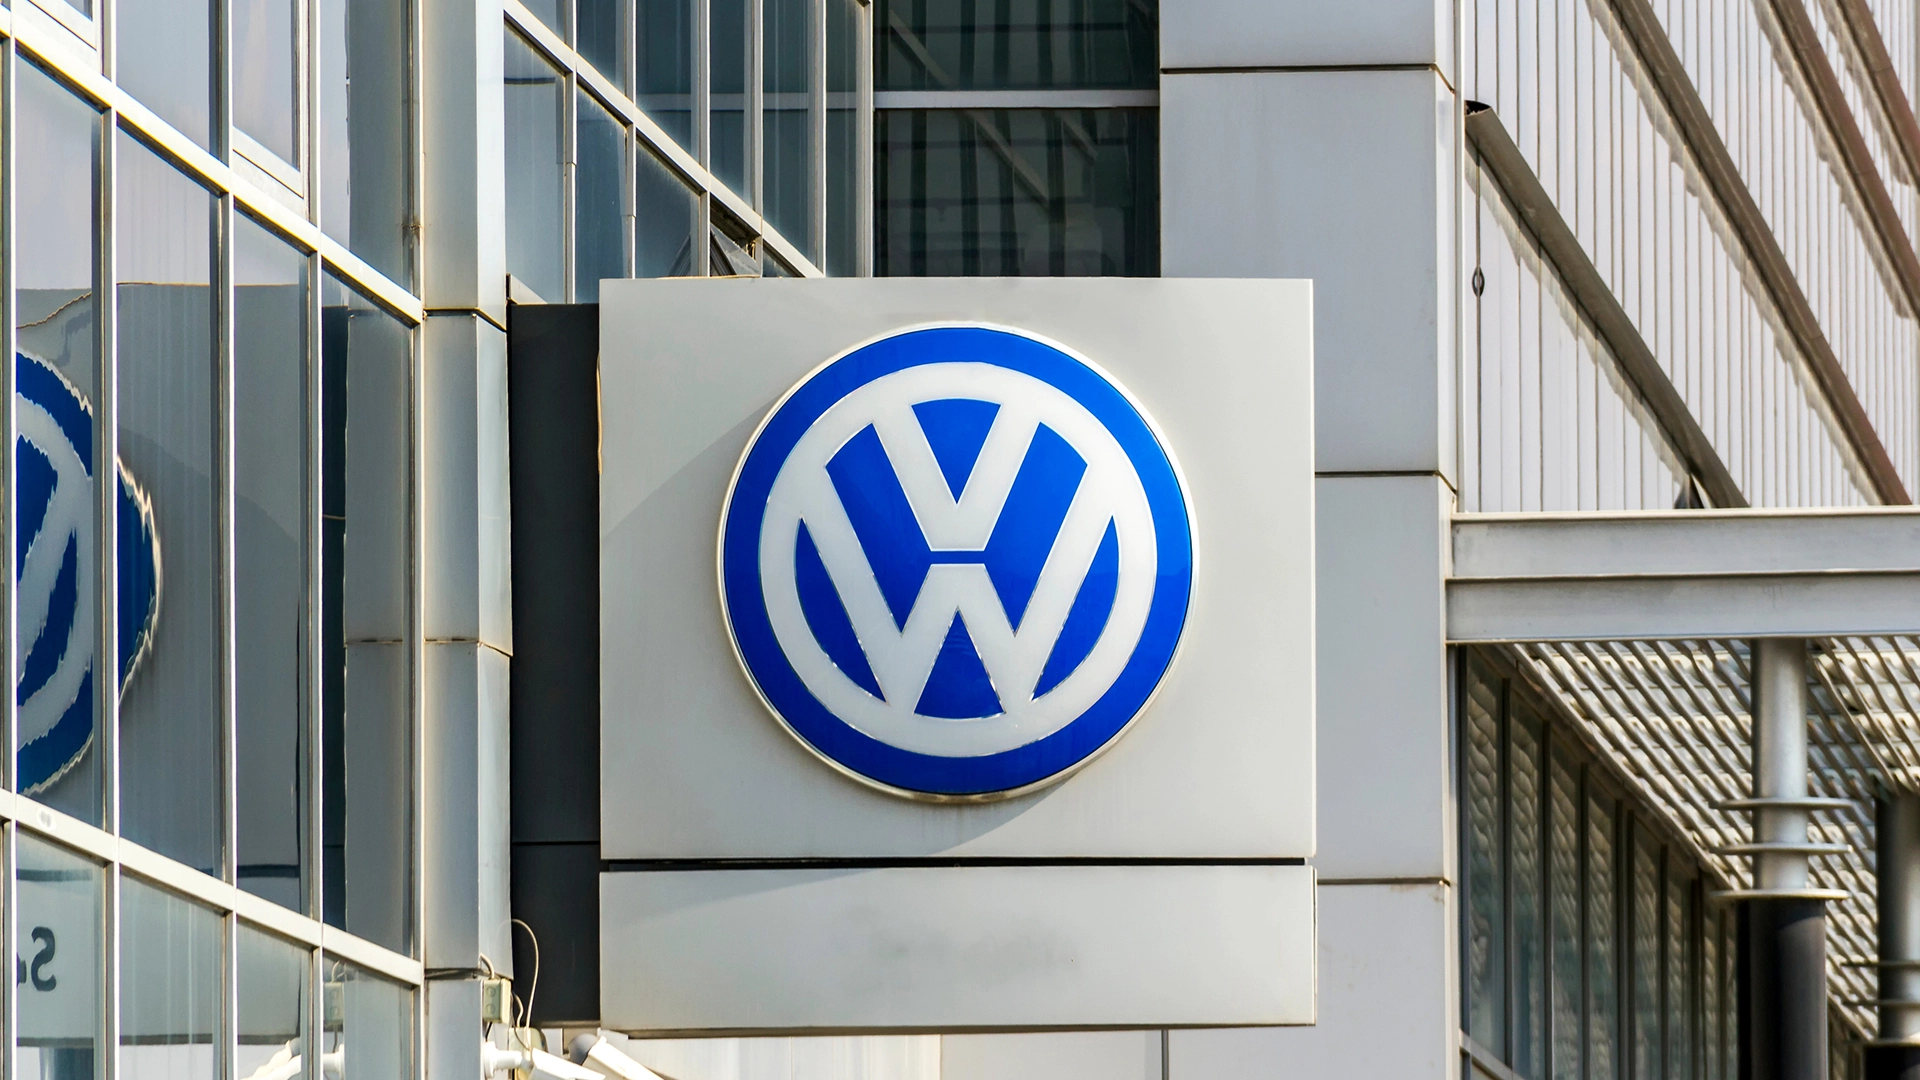 Schlechte Nachrichten im Doppelpack: Kommt es für die Aktie von Volkswagen jetzt ganz dicke? (Foto: multitel/Shutterstock)